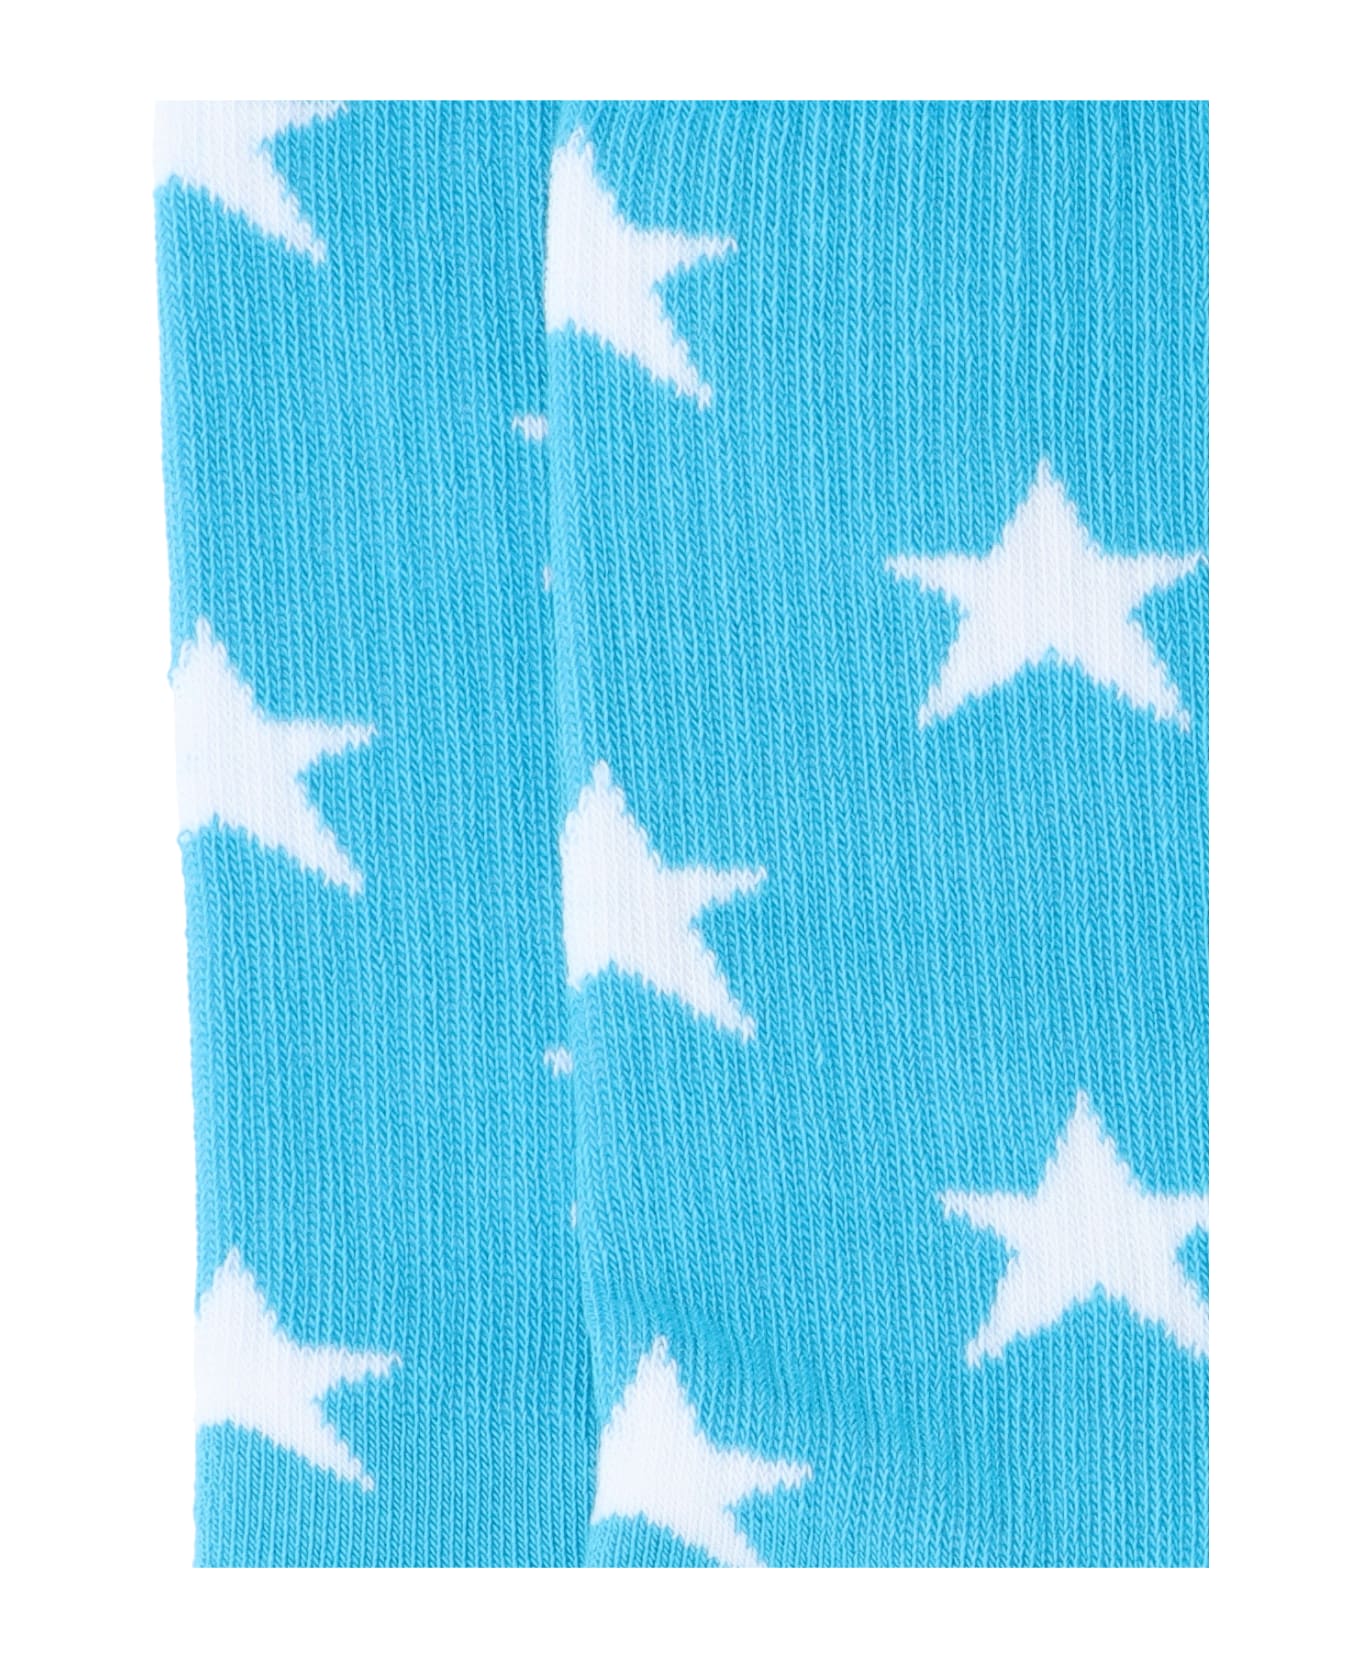 ERL Star Socks - Light Blue